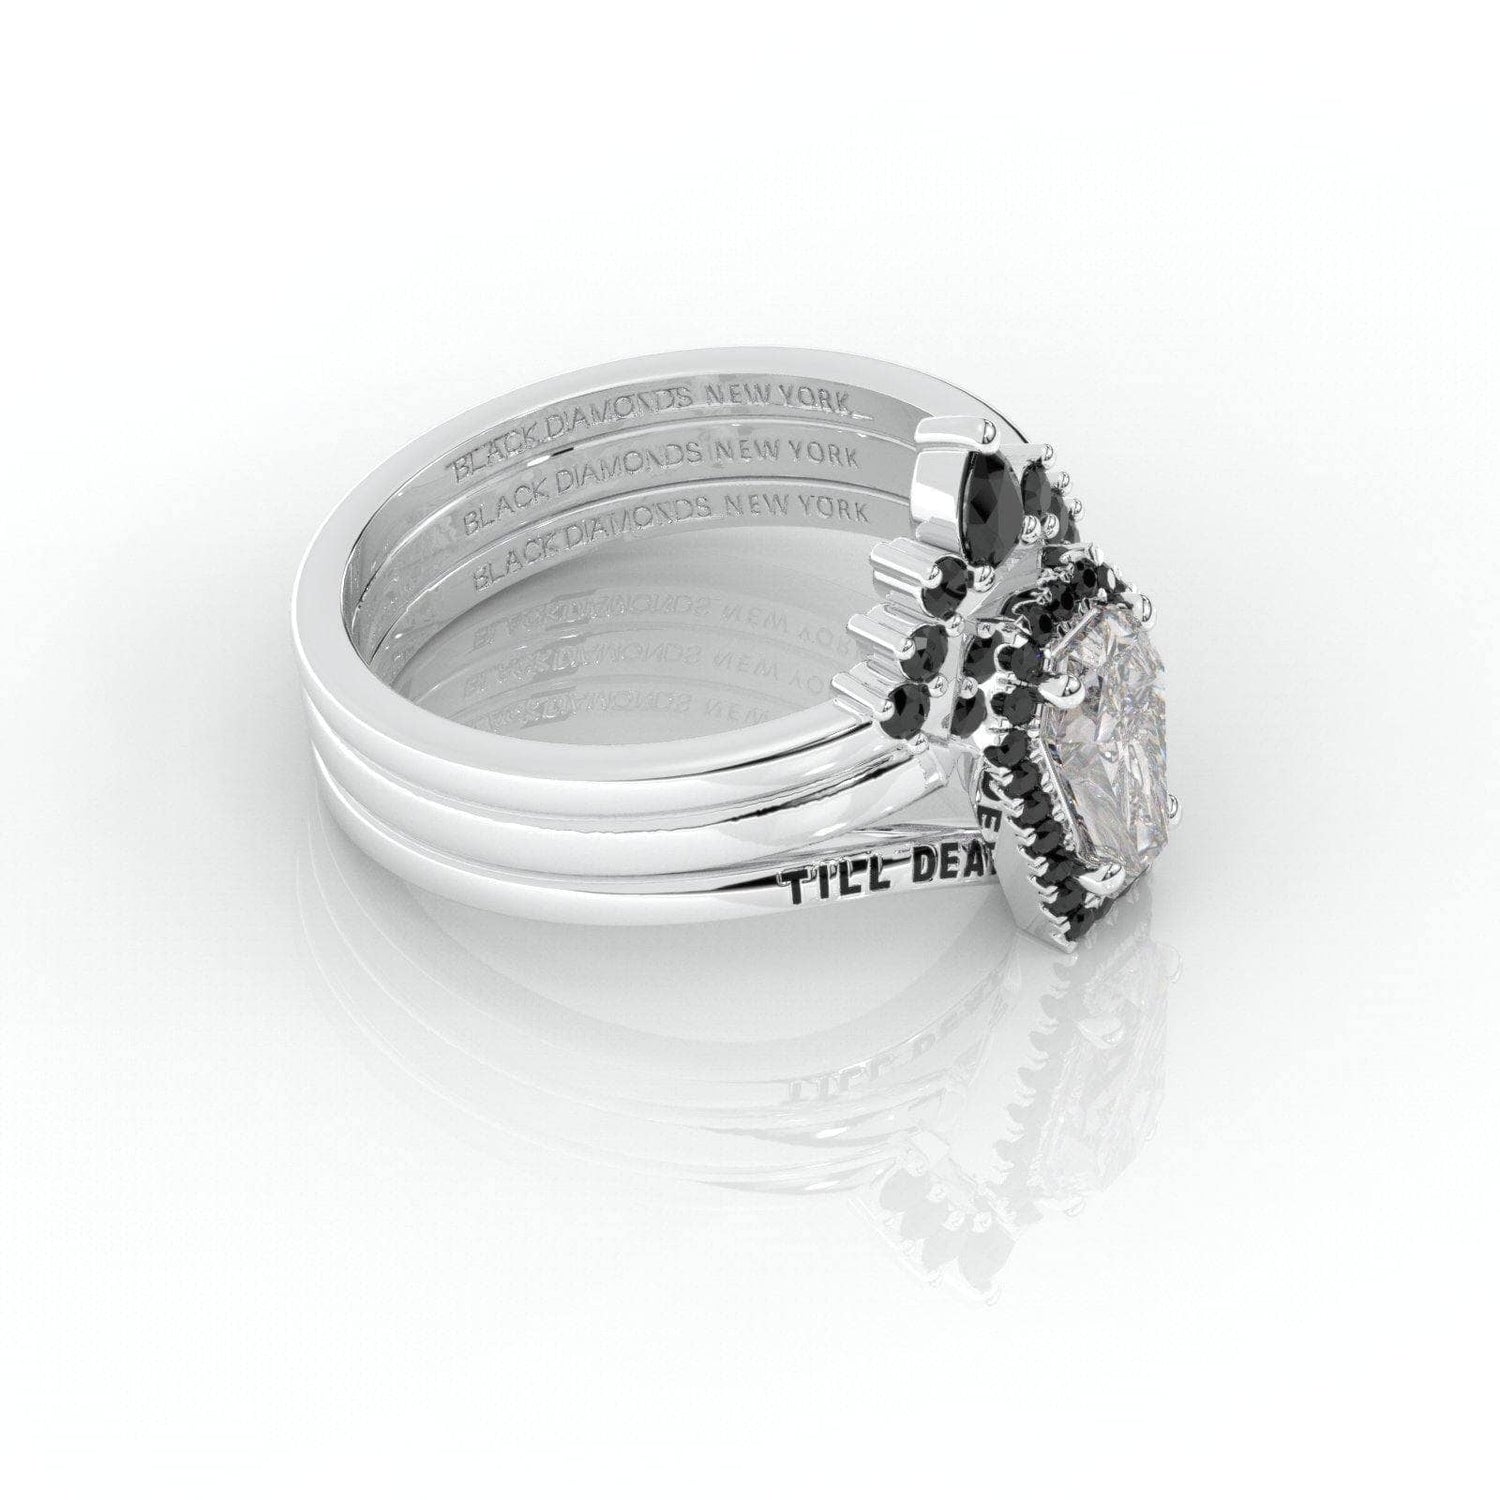 Till Death Do Us Part Rings- Rare Coffin Cut Moissanite 14k White Gold Ring Set-Black Diamonds New York